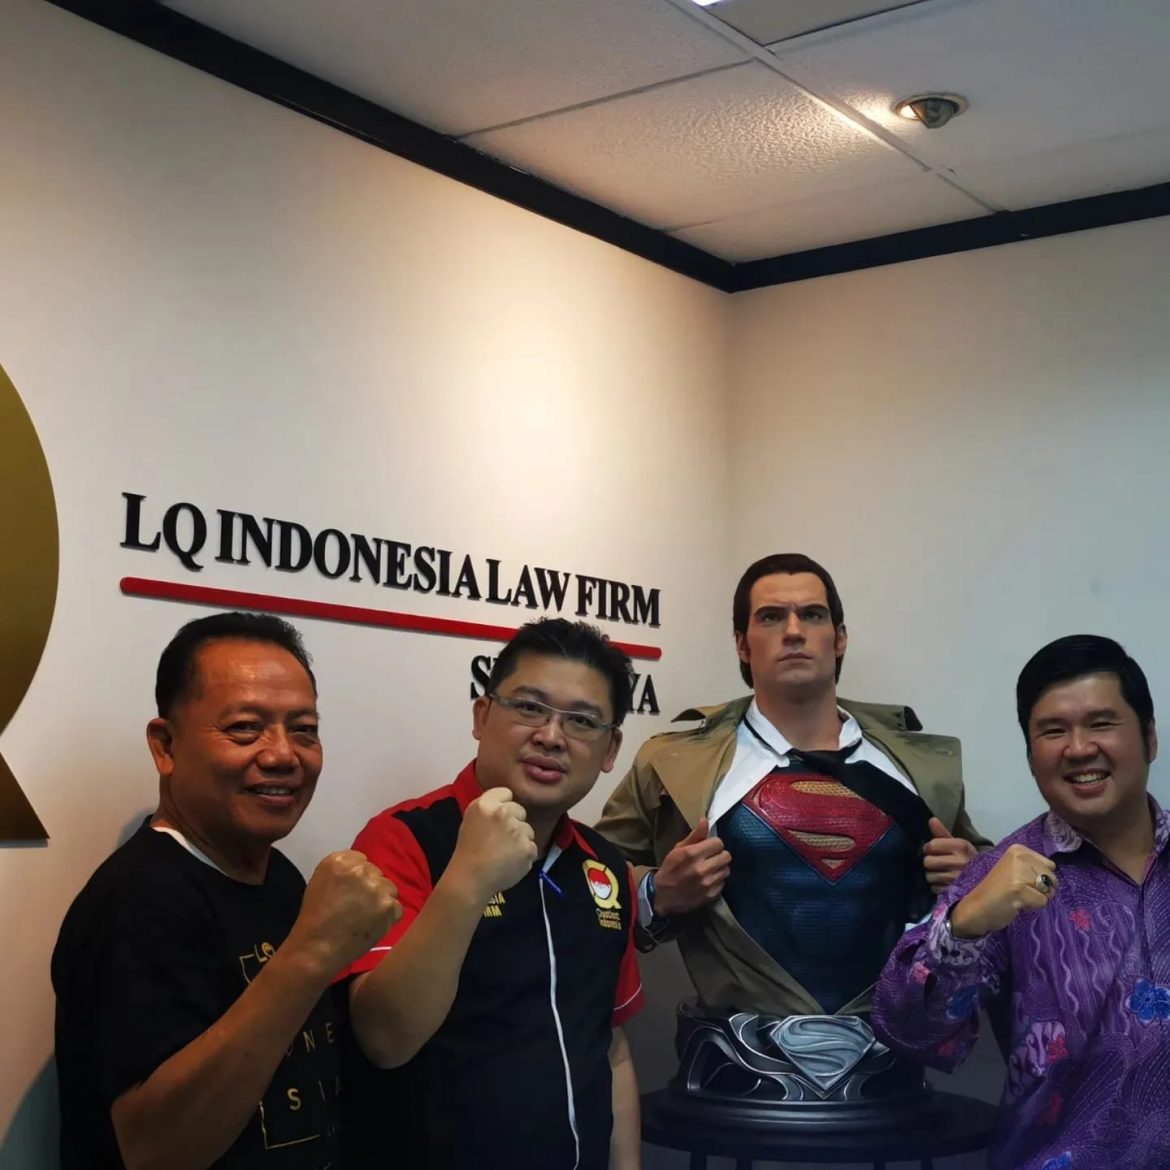 MUKA BARU KANTOR HUKUM LQ INDONESIA. FOTO GRATIS BARENG SUPERHERO FAVORIT ANDA